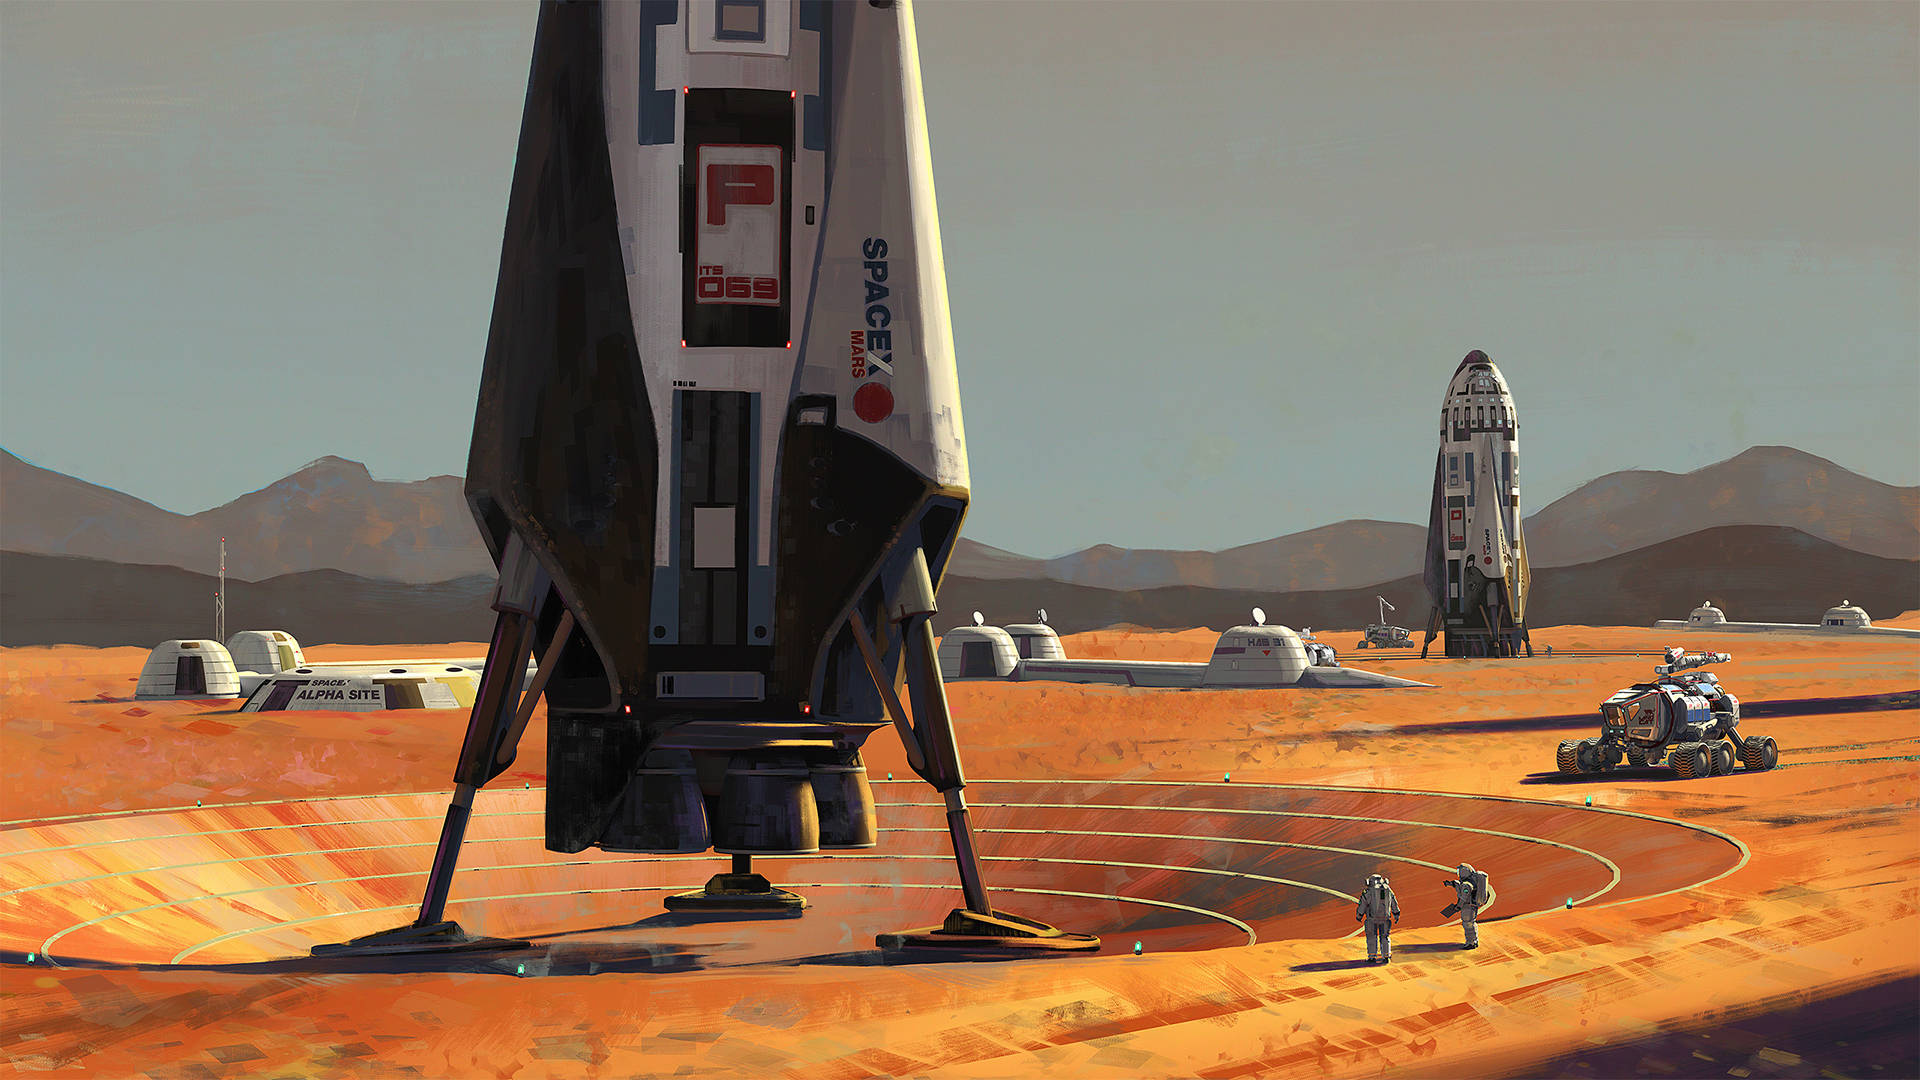 Aspacex Pintando Suas Starships Na Base Alpha Em Marte. Papel de Parede